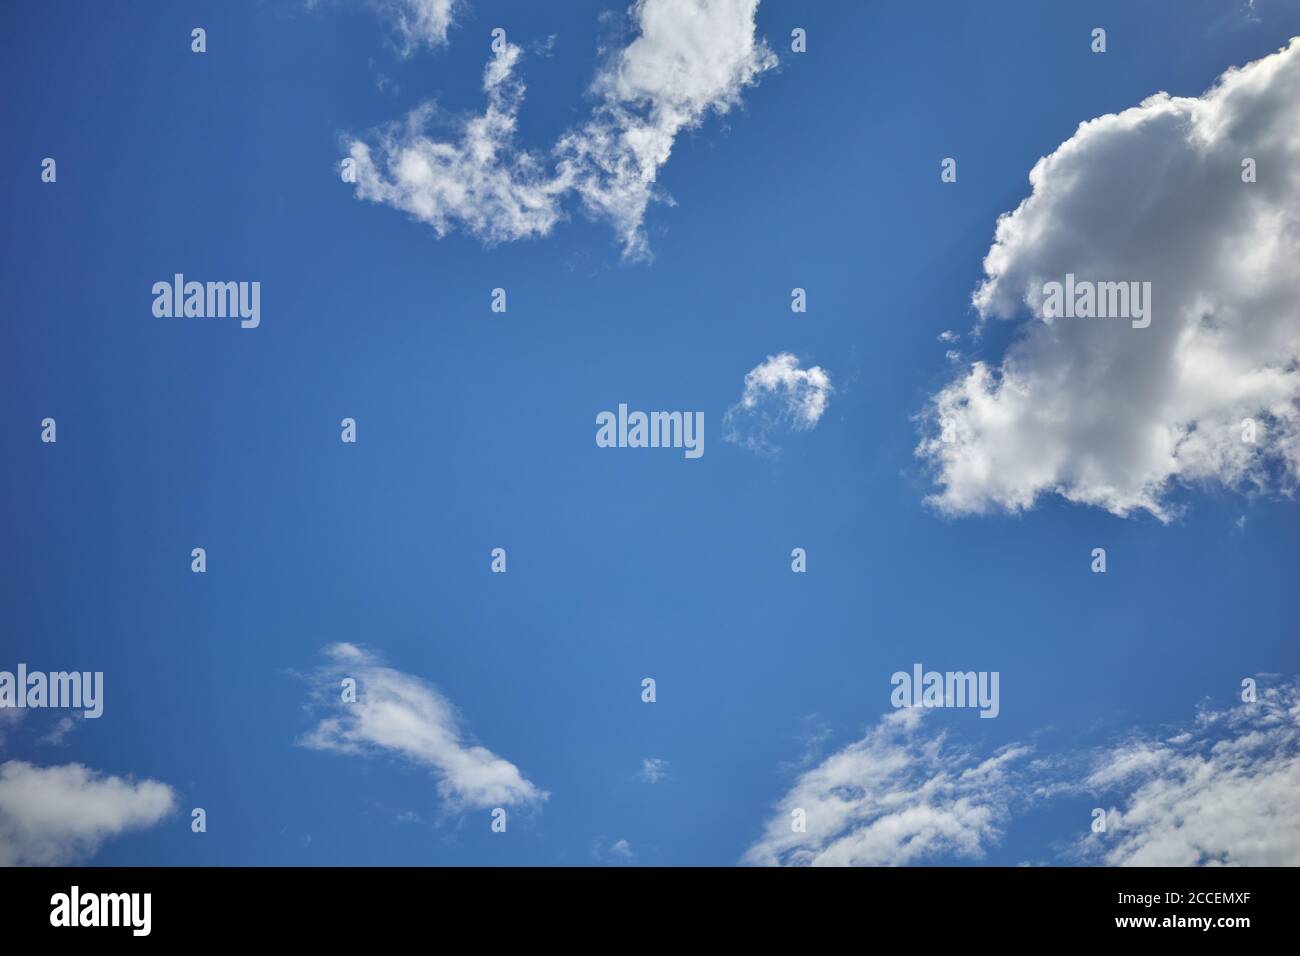 Blauer Himmel mit sonnenbeschienenen Cumulus-Wolken. Zerrissene Cirrus Cumuli Wolken schweben im blauen Himmel. Hintergrund für Vorhersage und Meteorologie Illustration Stockfoto